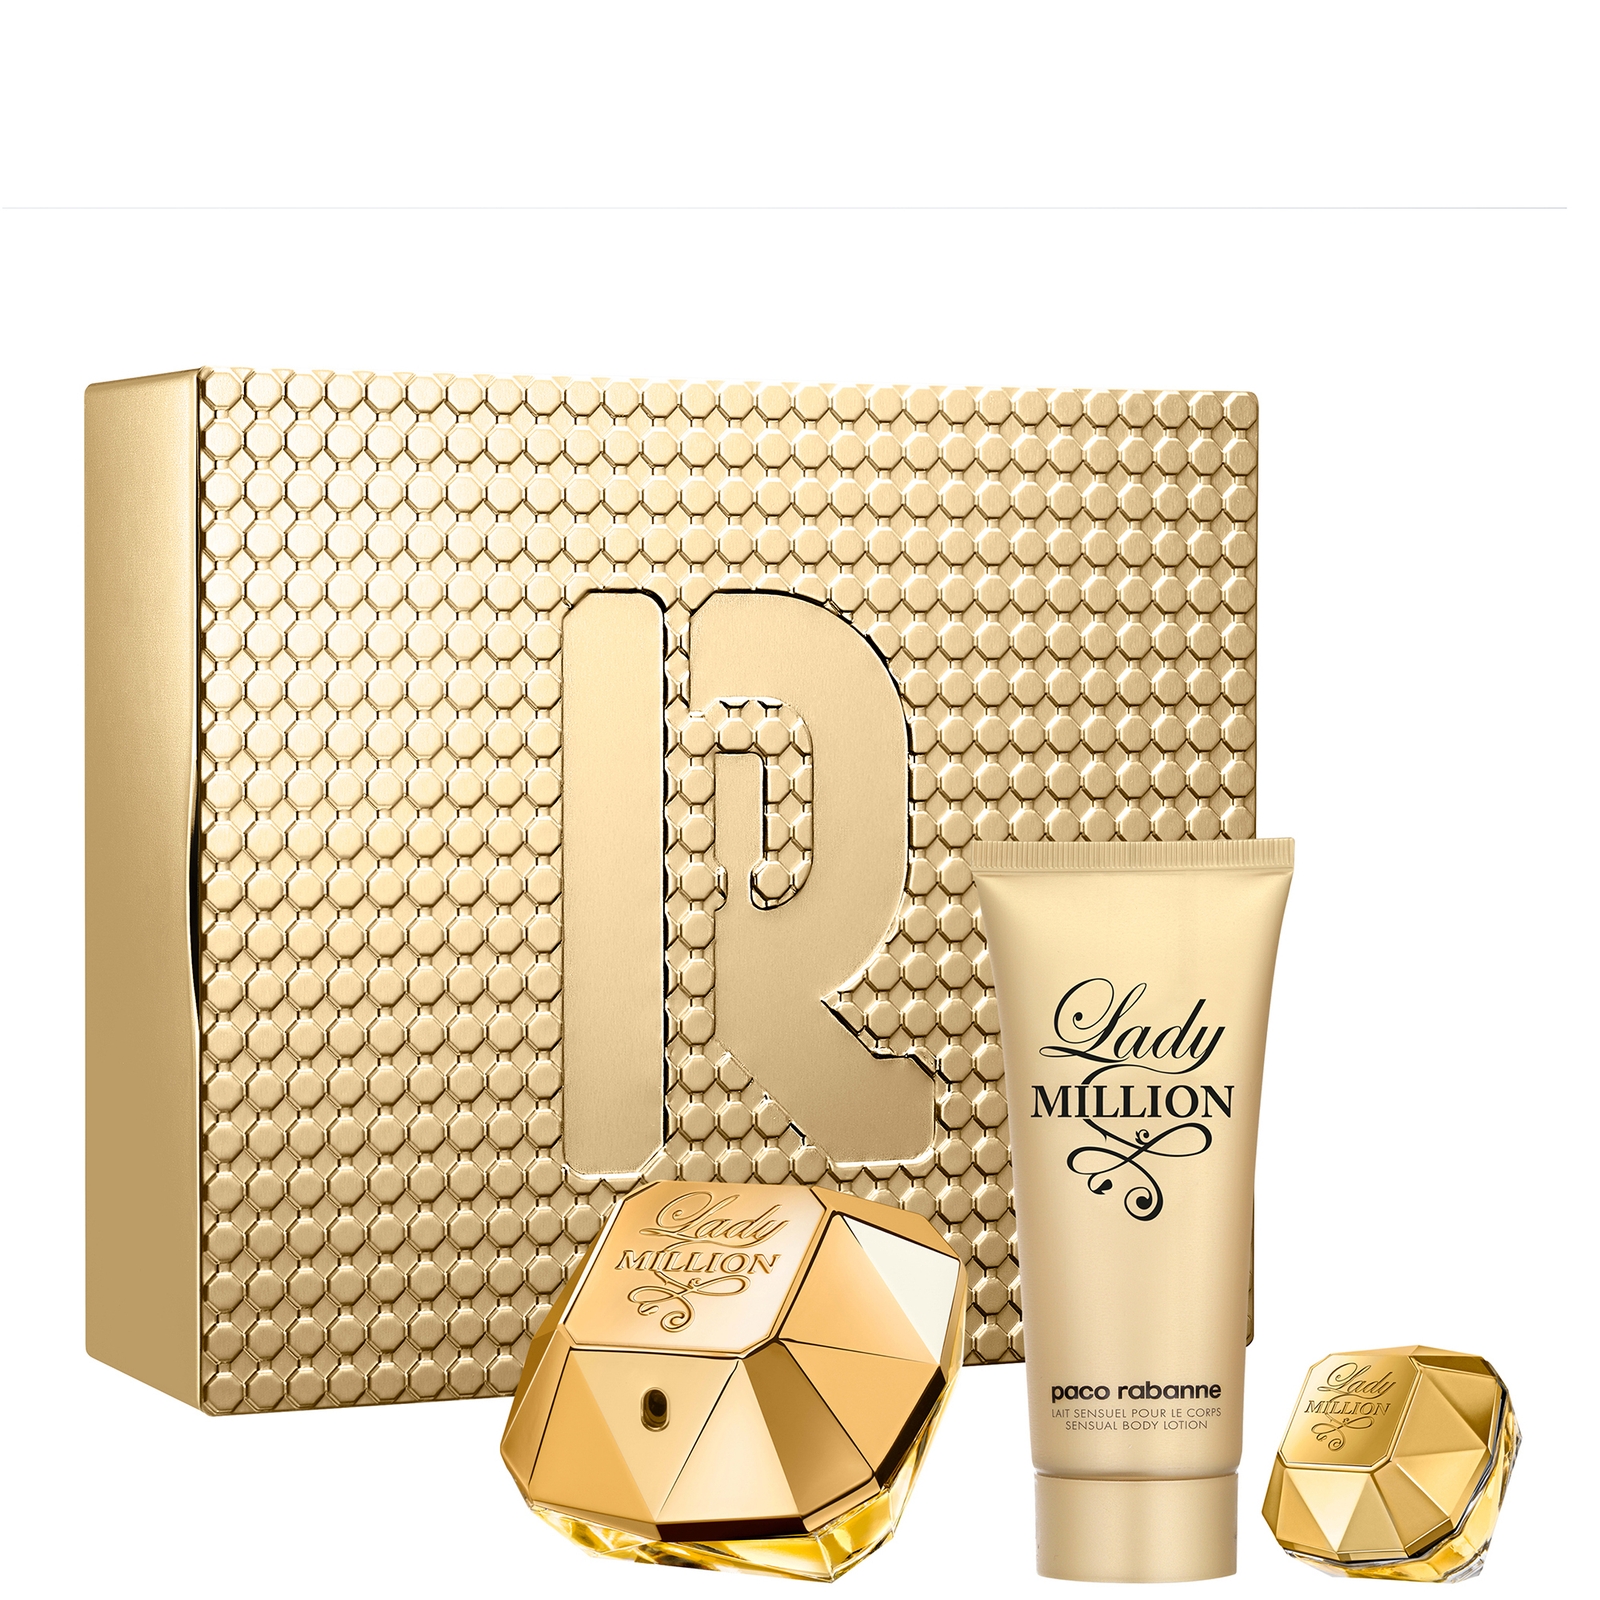 Paco Rabanne Lady Million 80ml Eau De Parfum And 100ml Sensual Body Lotion Set With 5ml Eau De Parfum In White